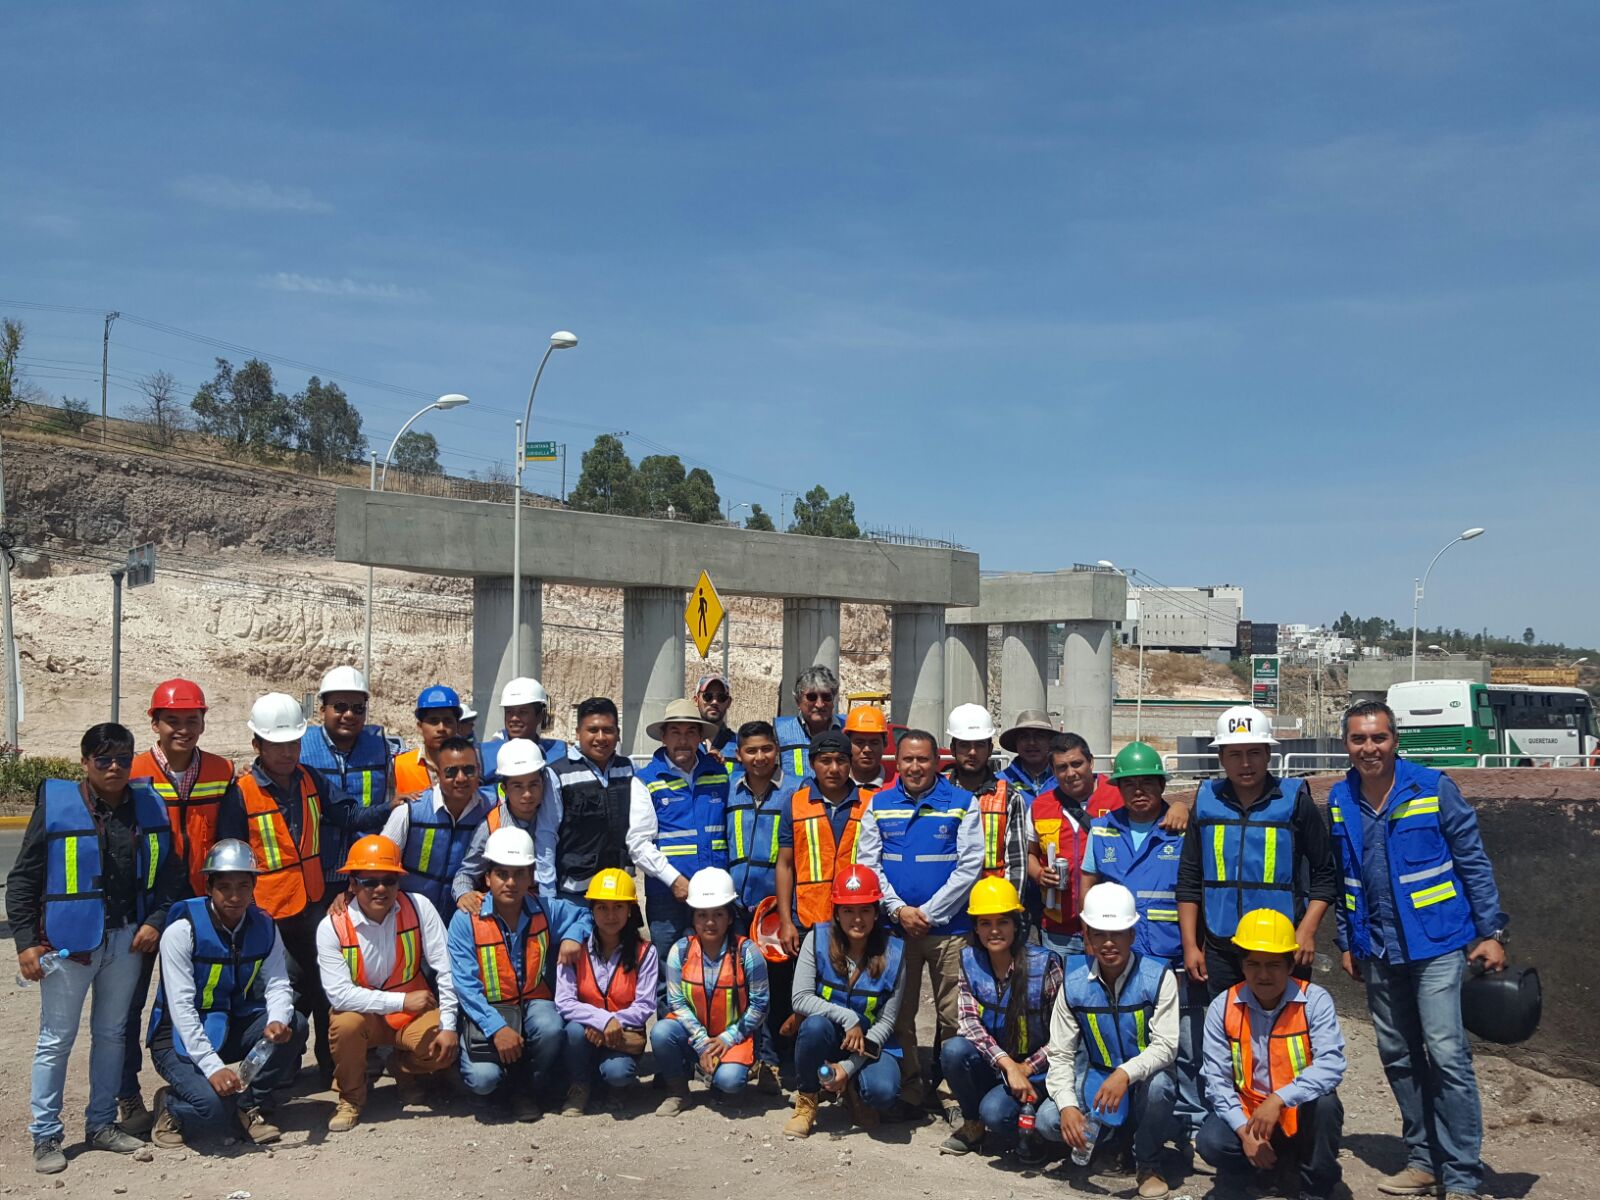  Recibe CEI visita de estudiantes de Ingeniería del Instituto Tecnológico de Tlaxiaco, Oaxaca